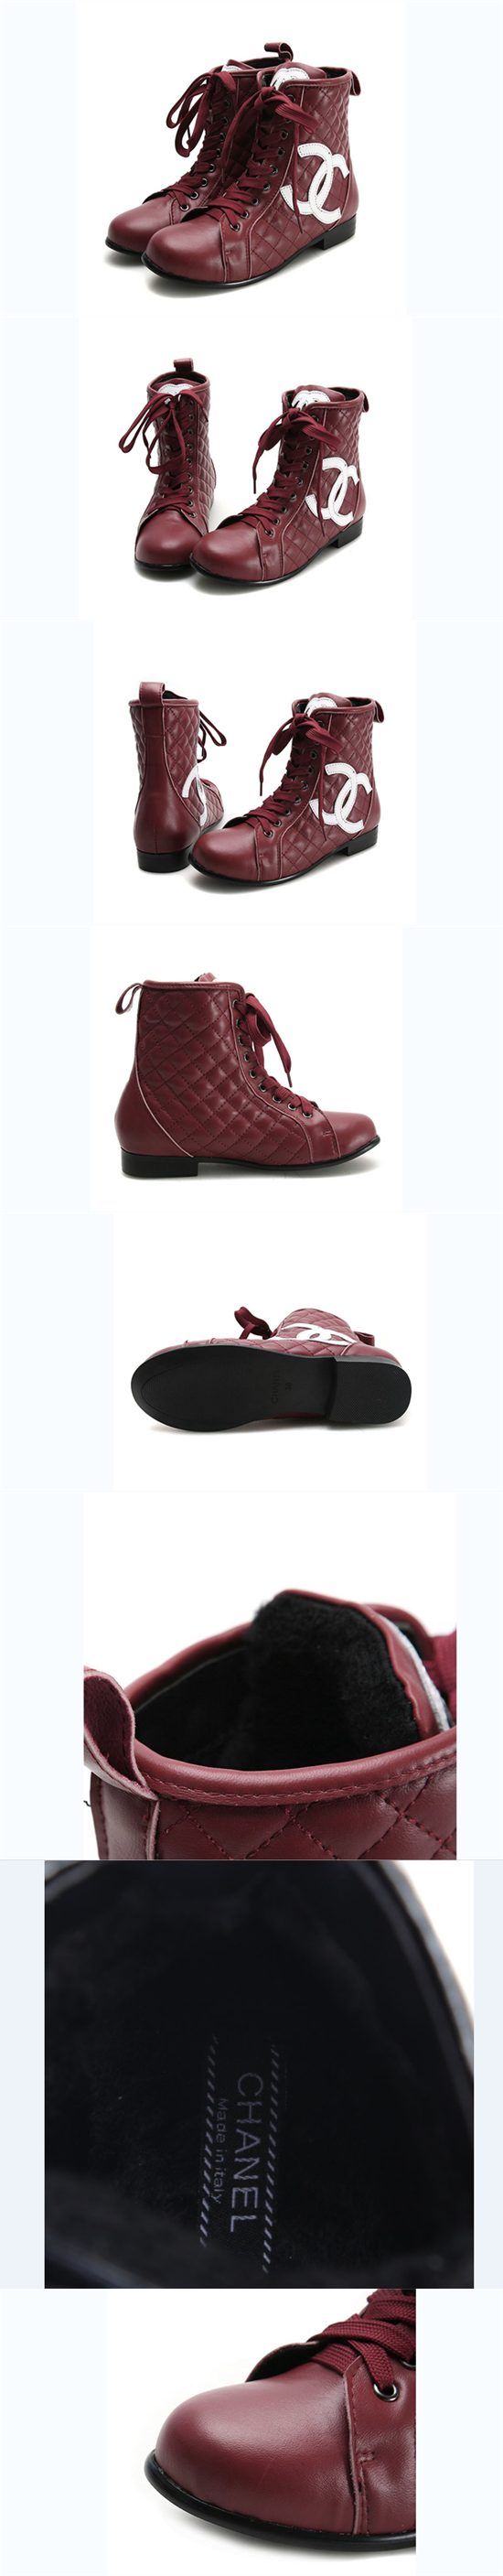 ブランド通販シャネル 中古 長靴 CHANEL ブーツ 靴 シューズ 23155 ワインレッド激安屋-ブランドコピー